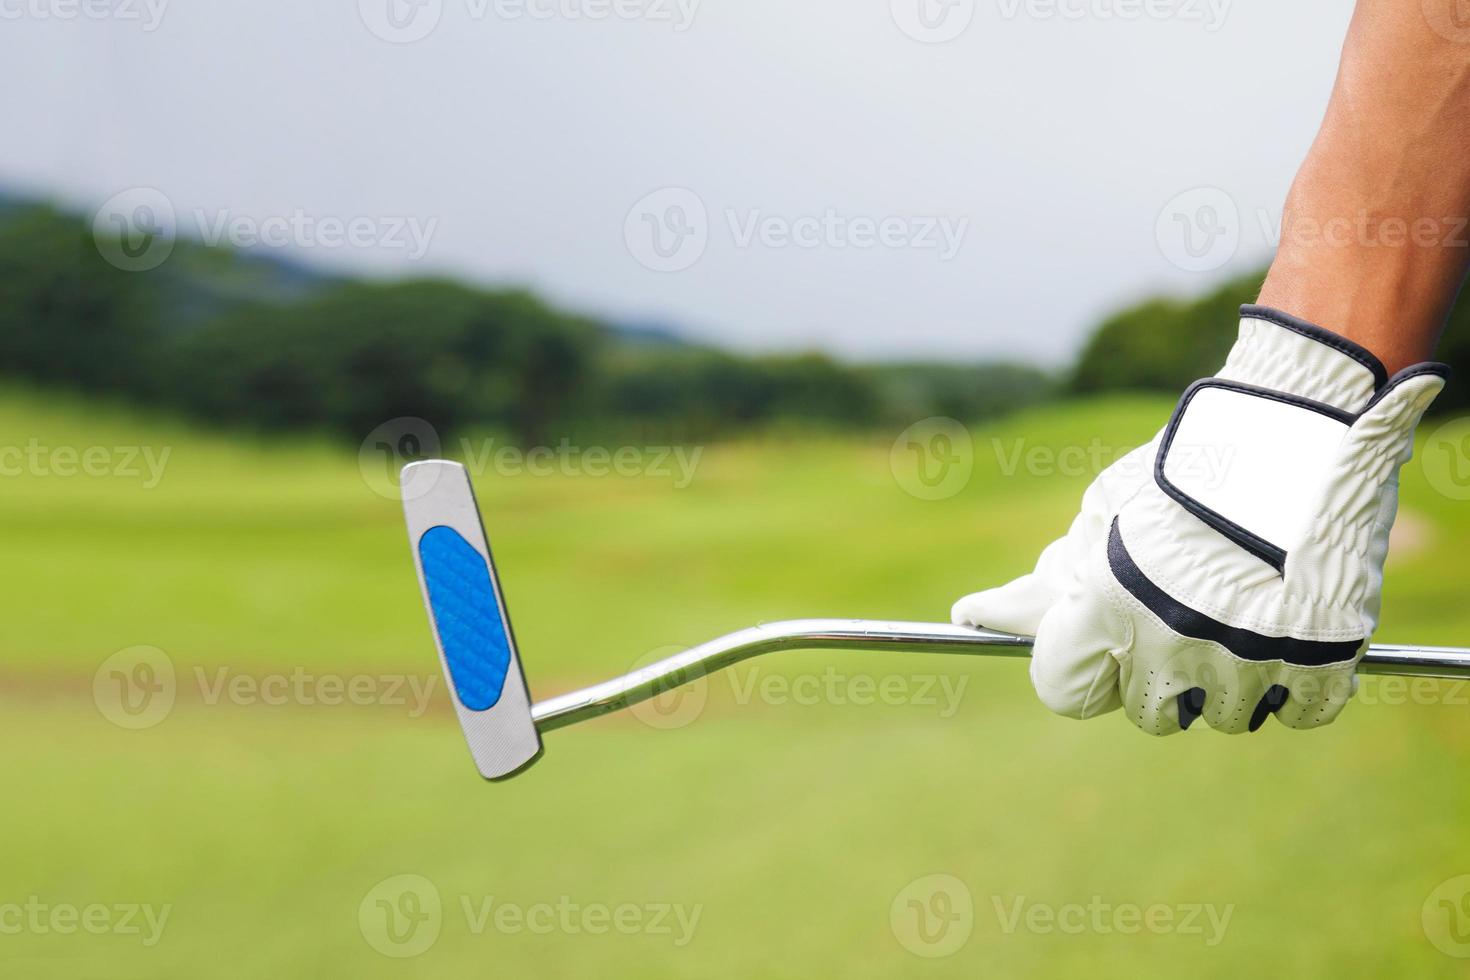 jogador de golfe segurando um taco de golfe no campo de golfe foto